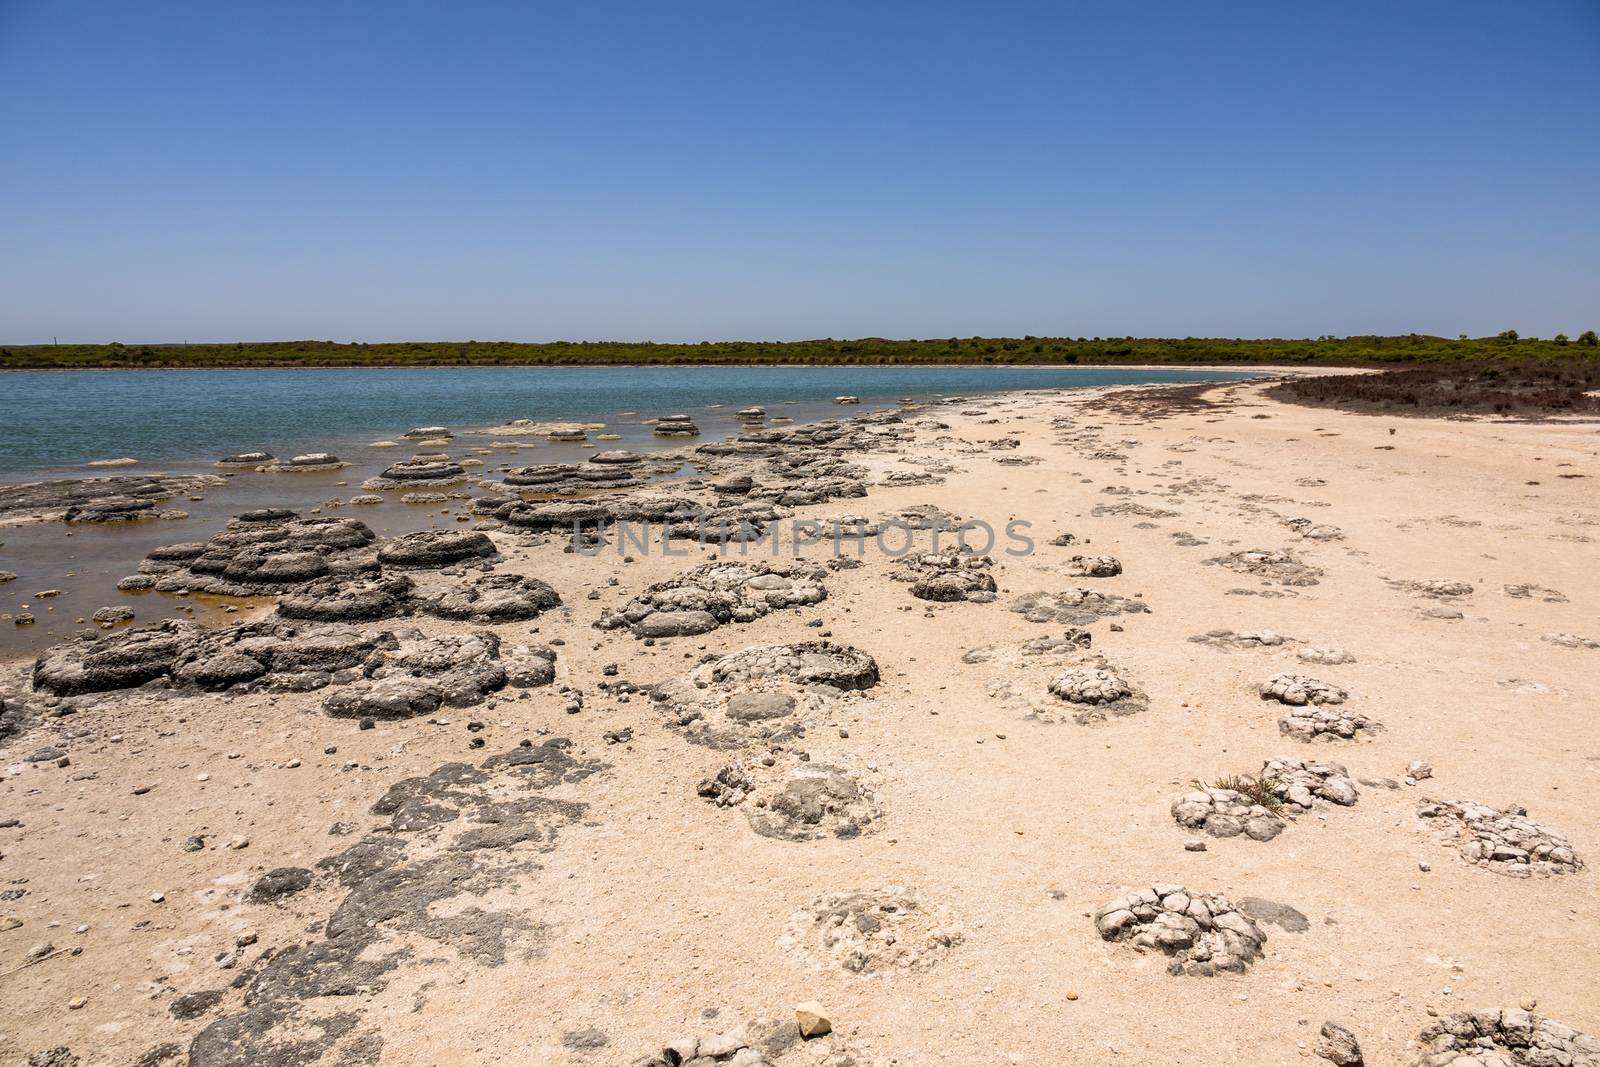 An image of Stromatolites Lake Thetis Western Australia